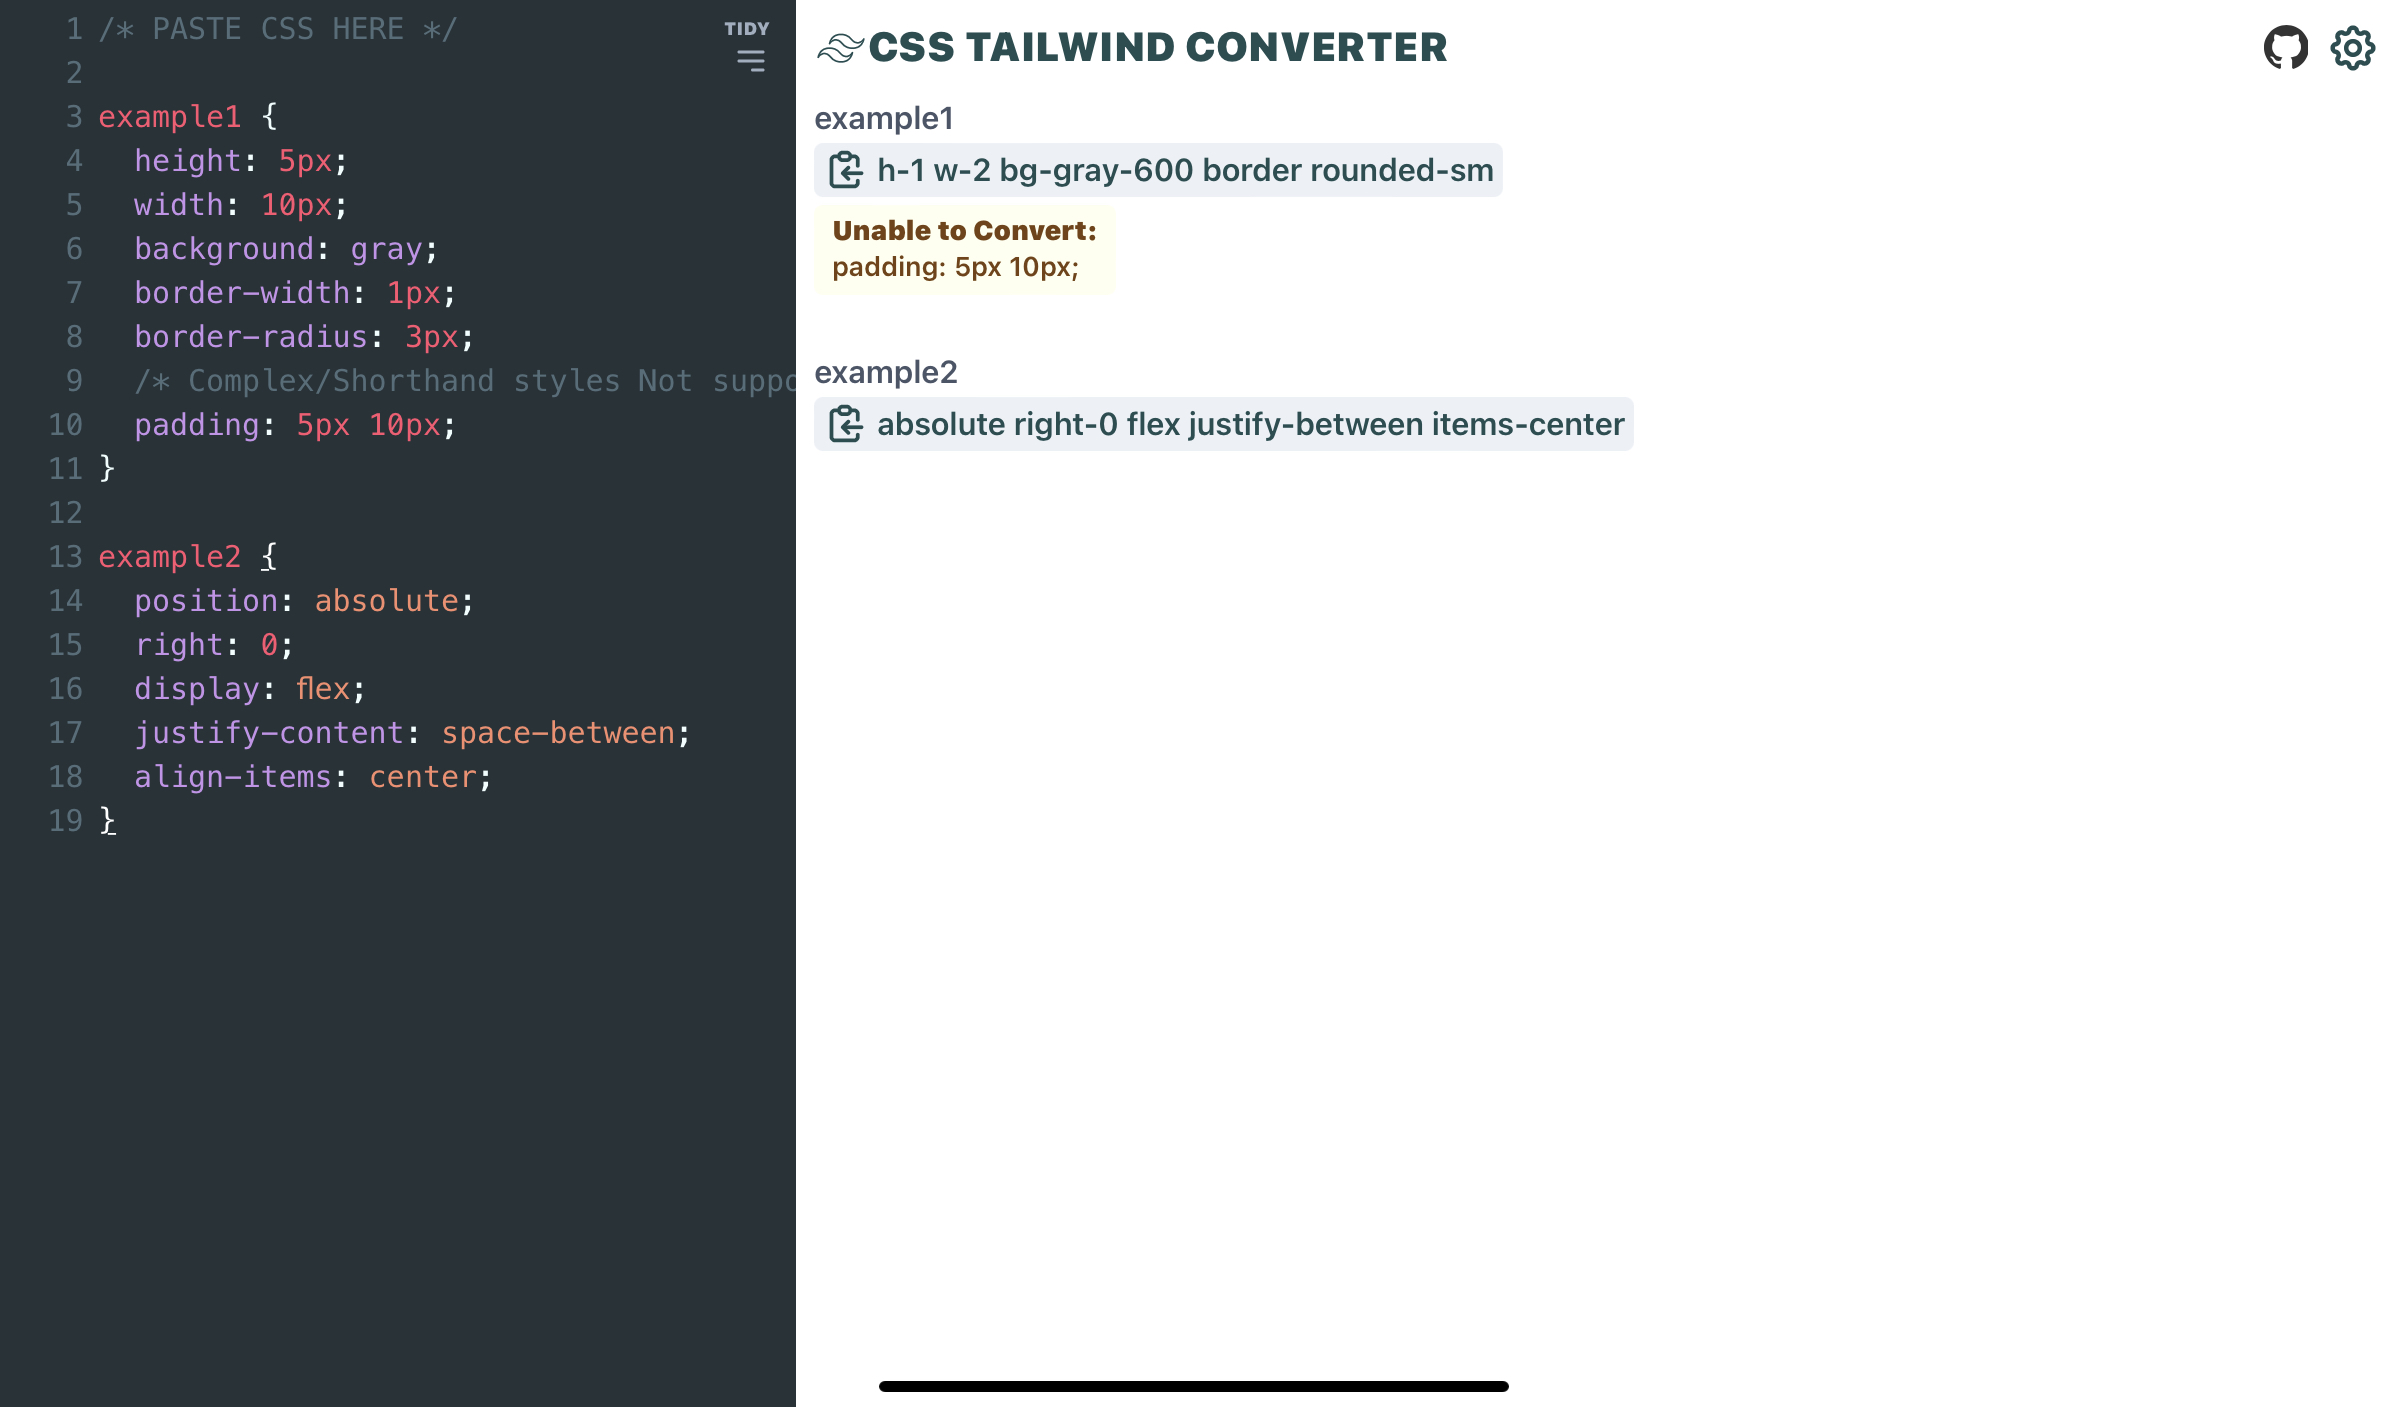 Screenshot of Tailwind CSS converter